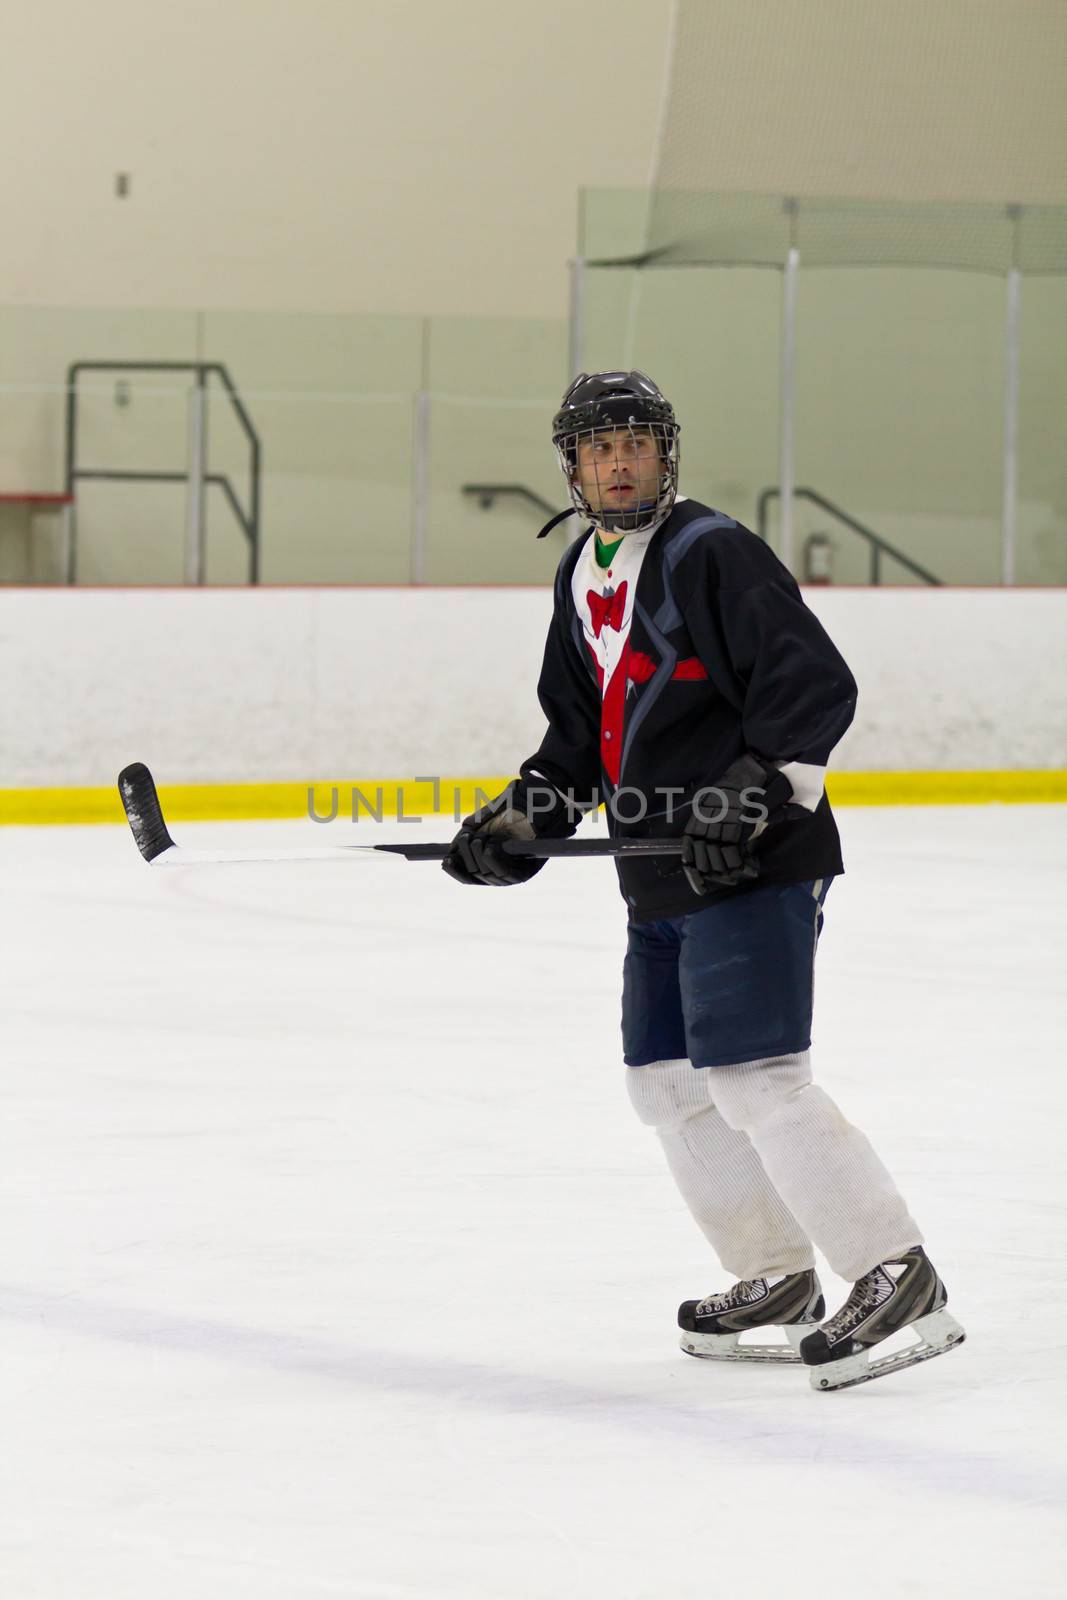 Hockey player skating